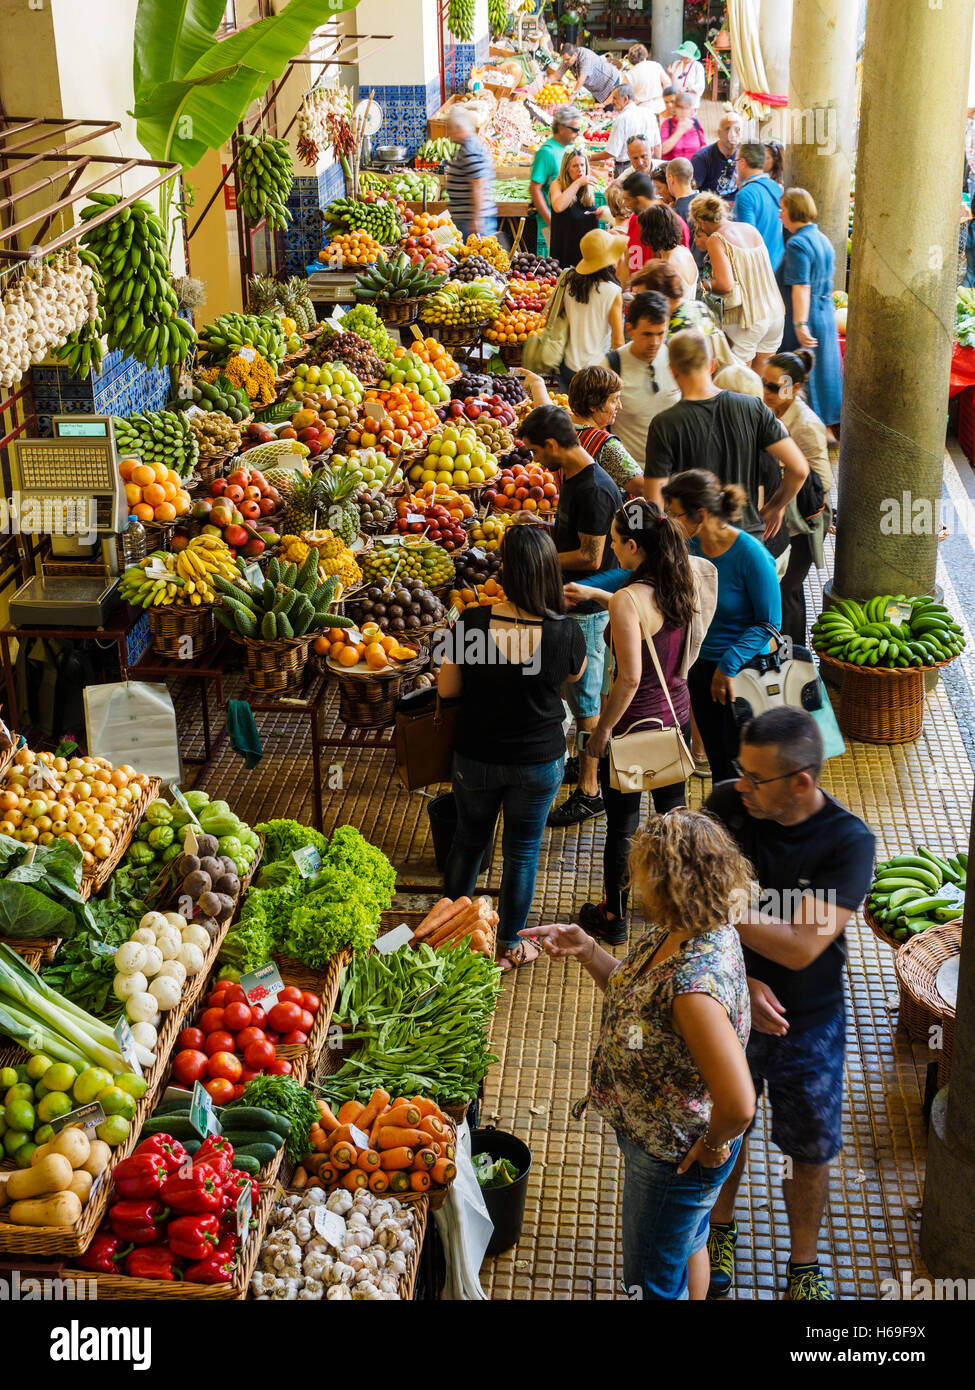 La frutta e la verdura sono in vendita nel mercato di Funchal hall sull'isola portoghese di Madeira Foto Stock